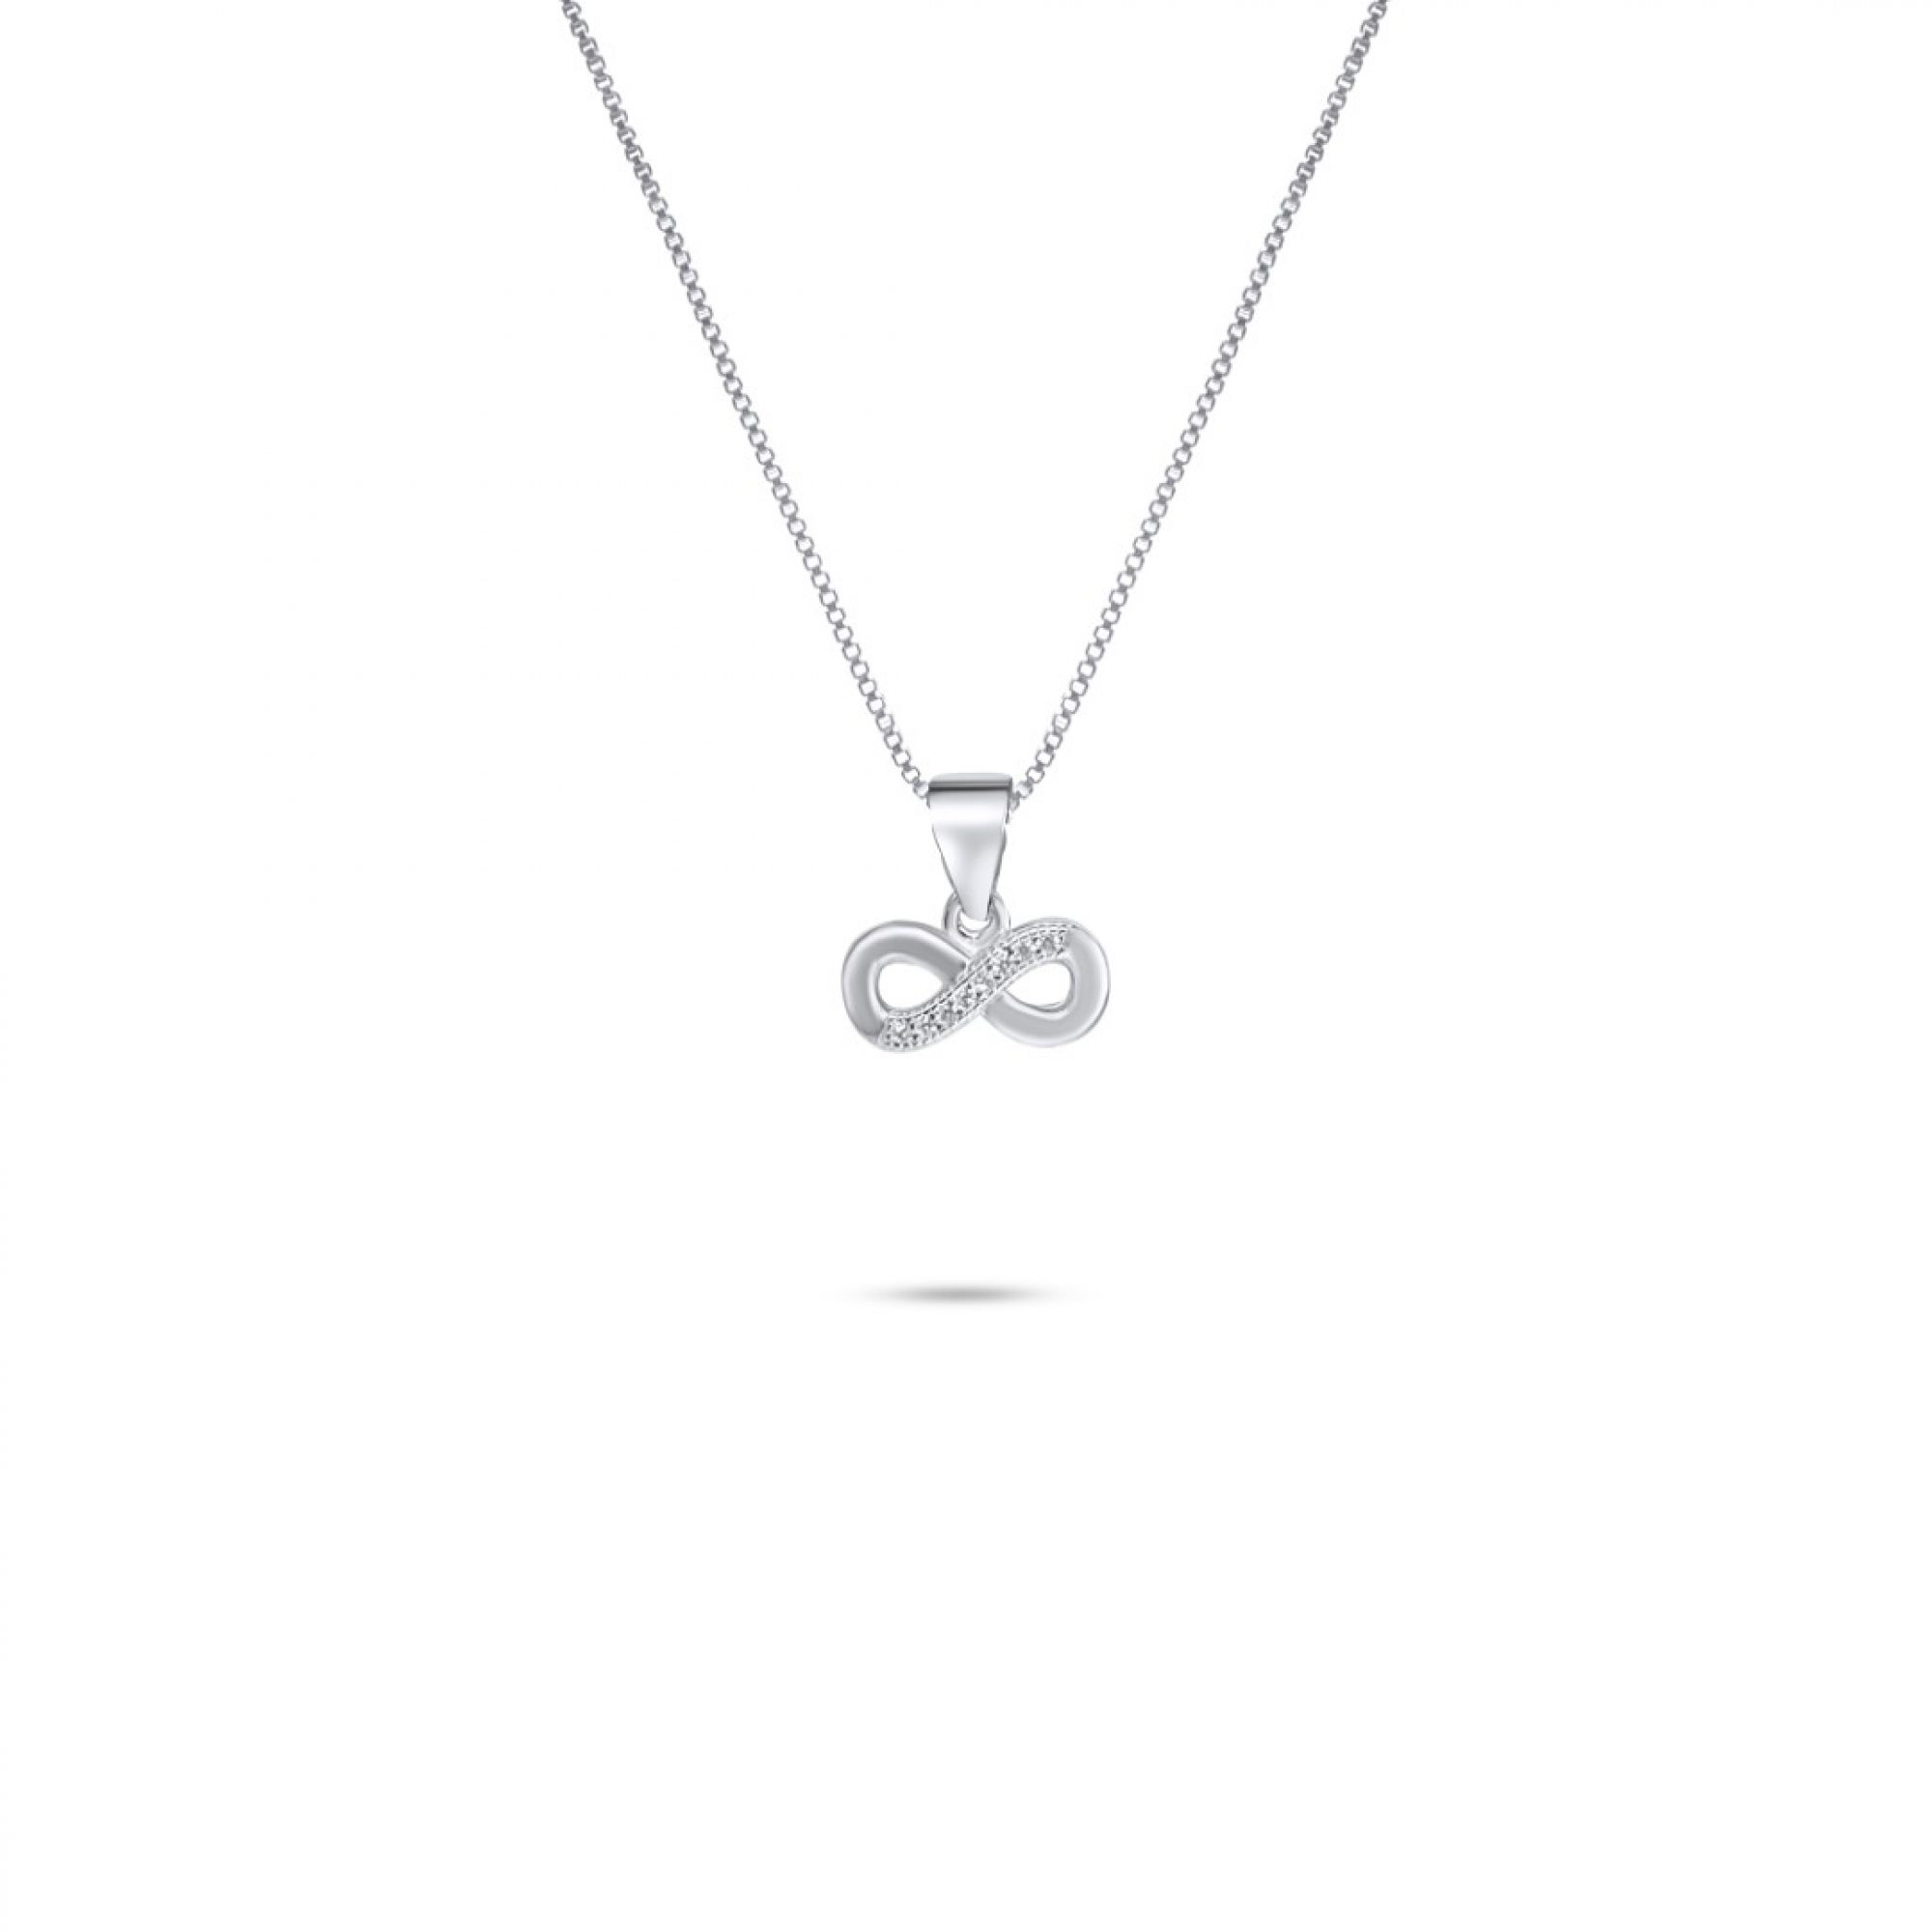 Infinity necklace with zircon stones